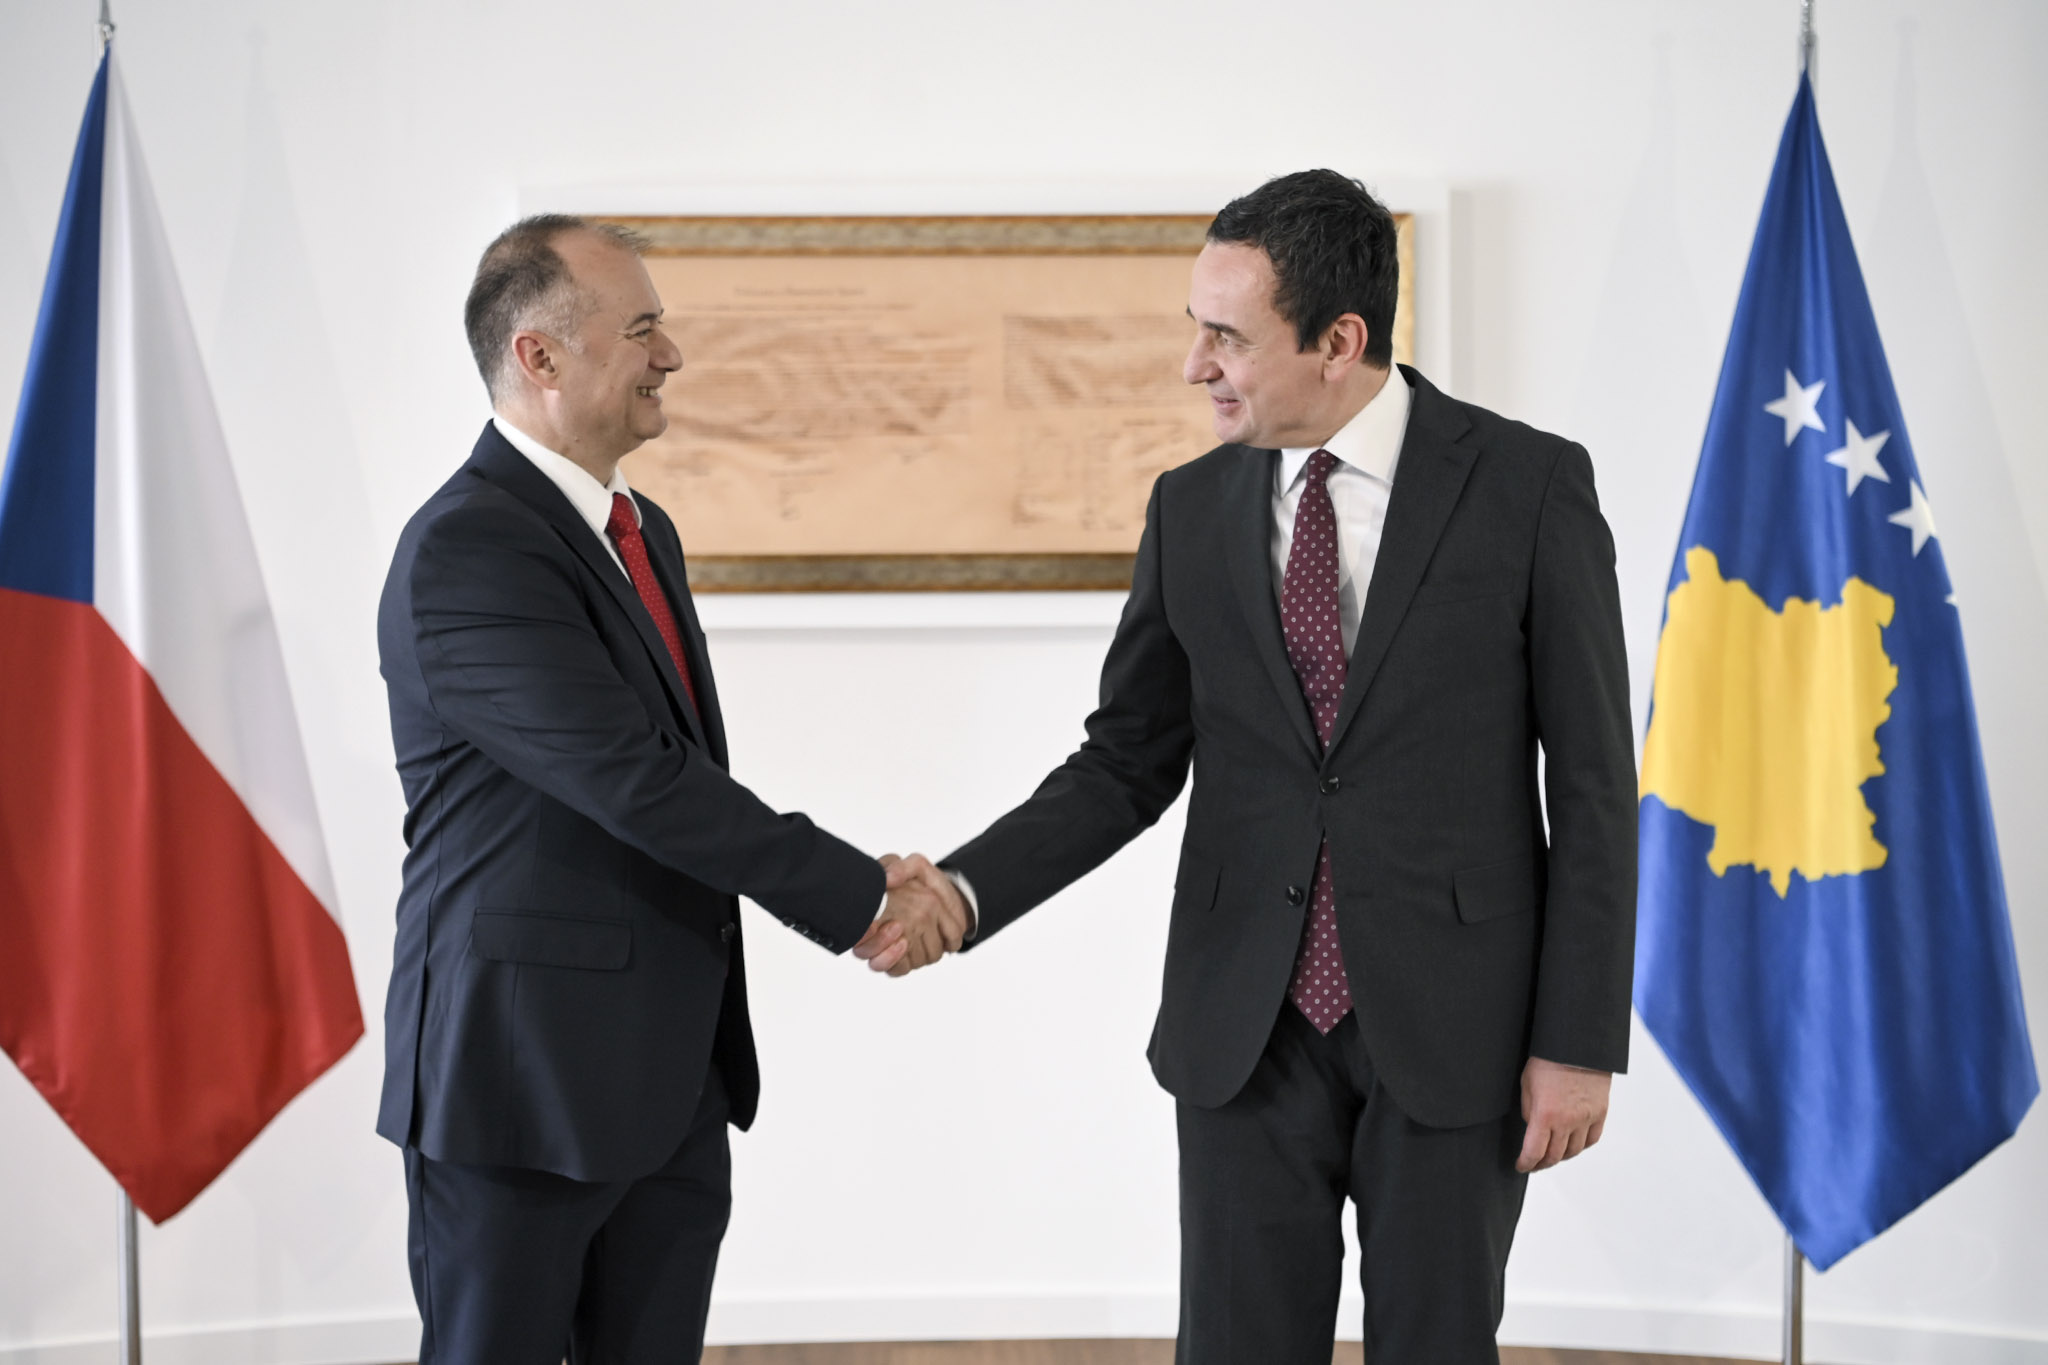 Kryeministri Kurti pret në takim lamtumirës ambasadorin çek në Kosovë, Bilek